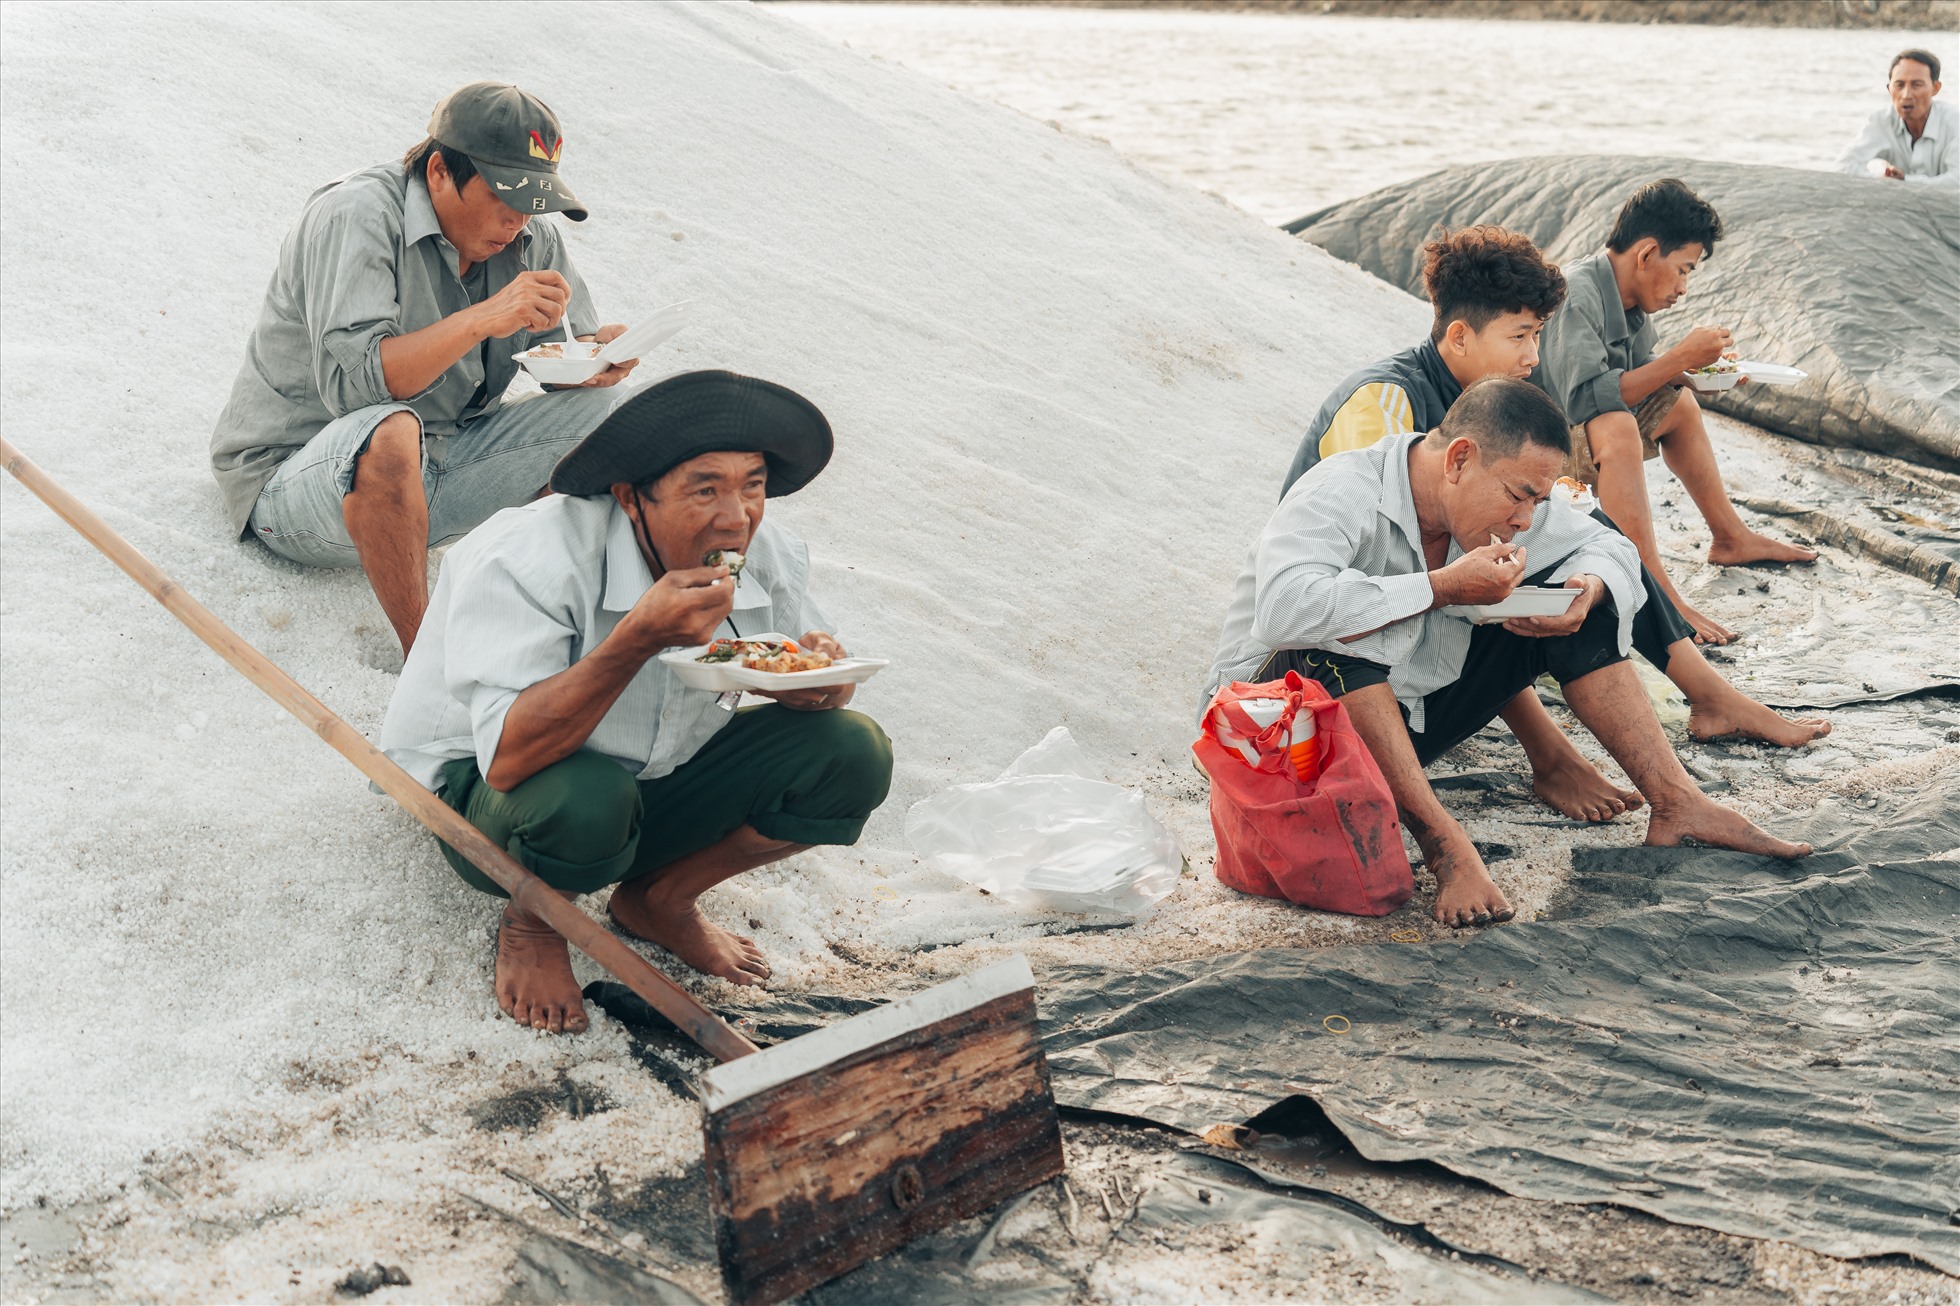 Bữa sáng trên đồng. Ảnh: Nguyễn Khánh Vũ Khoa